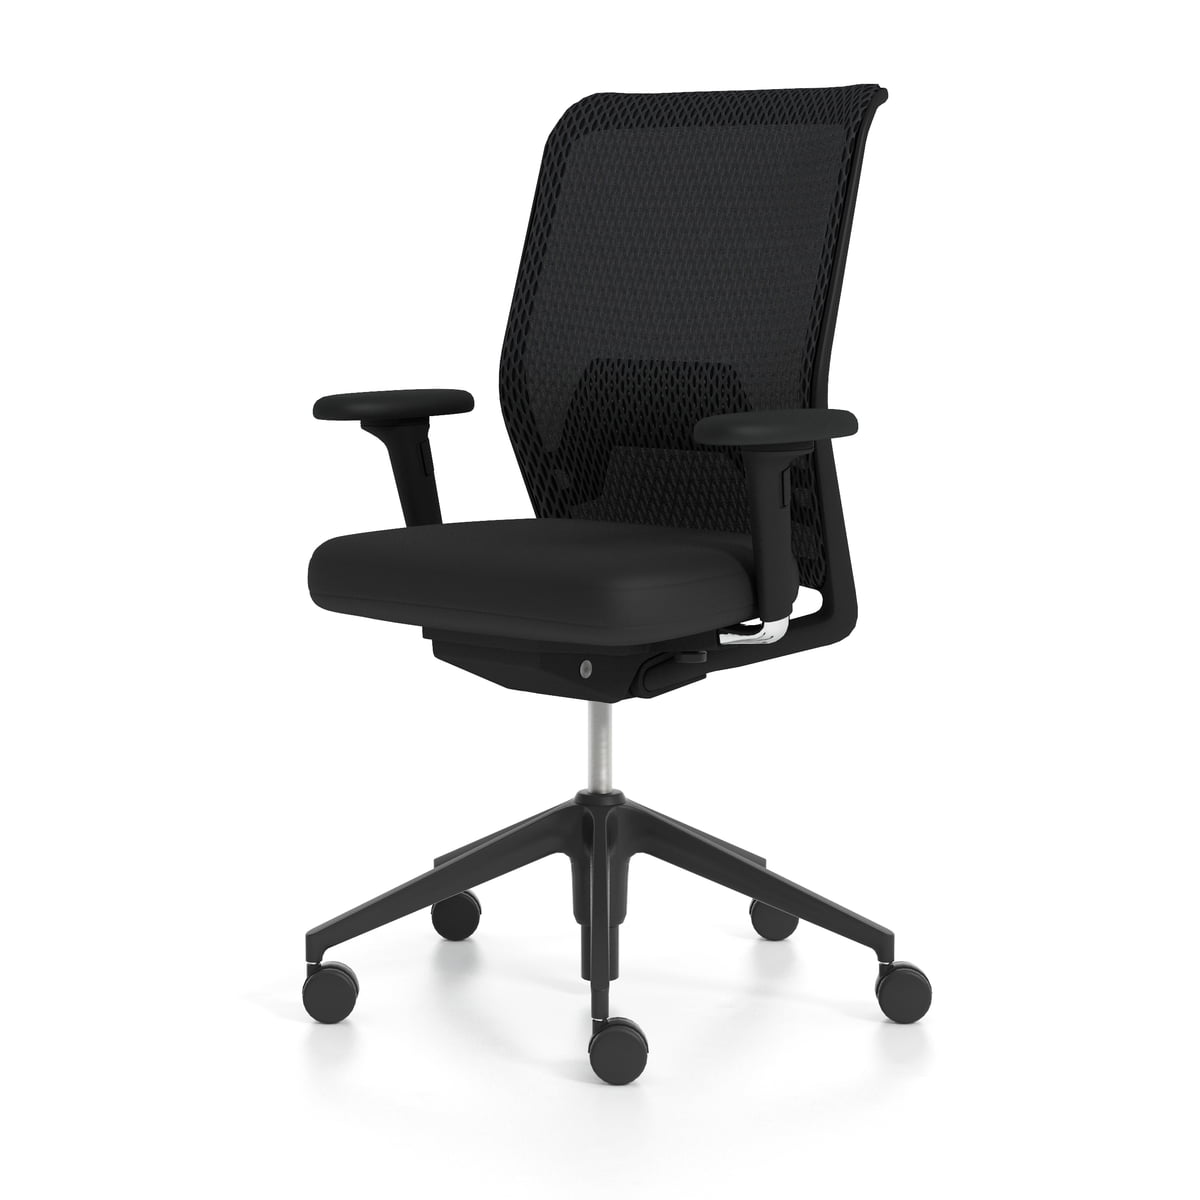 Chrome Armrests & Fixed Base Stylish Vitra ID Designer Office Chair 